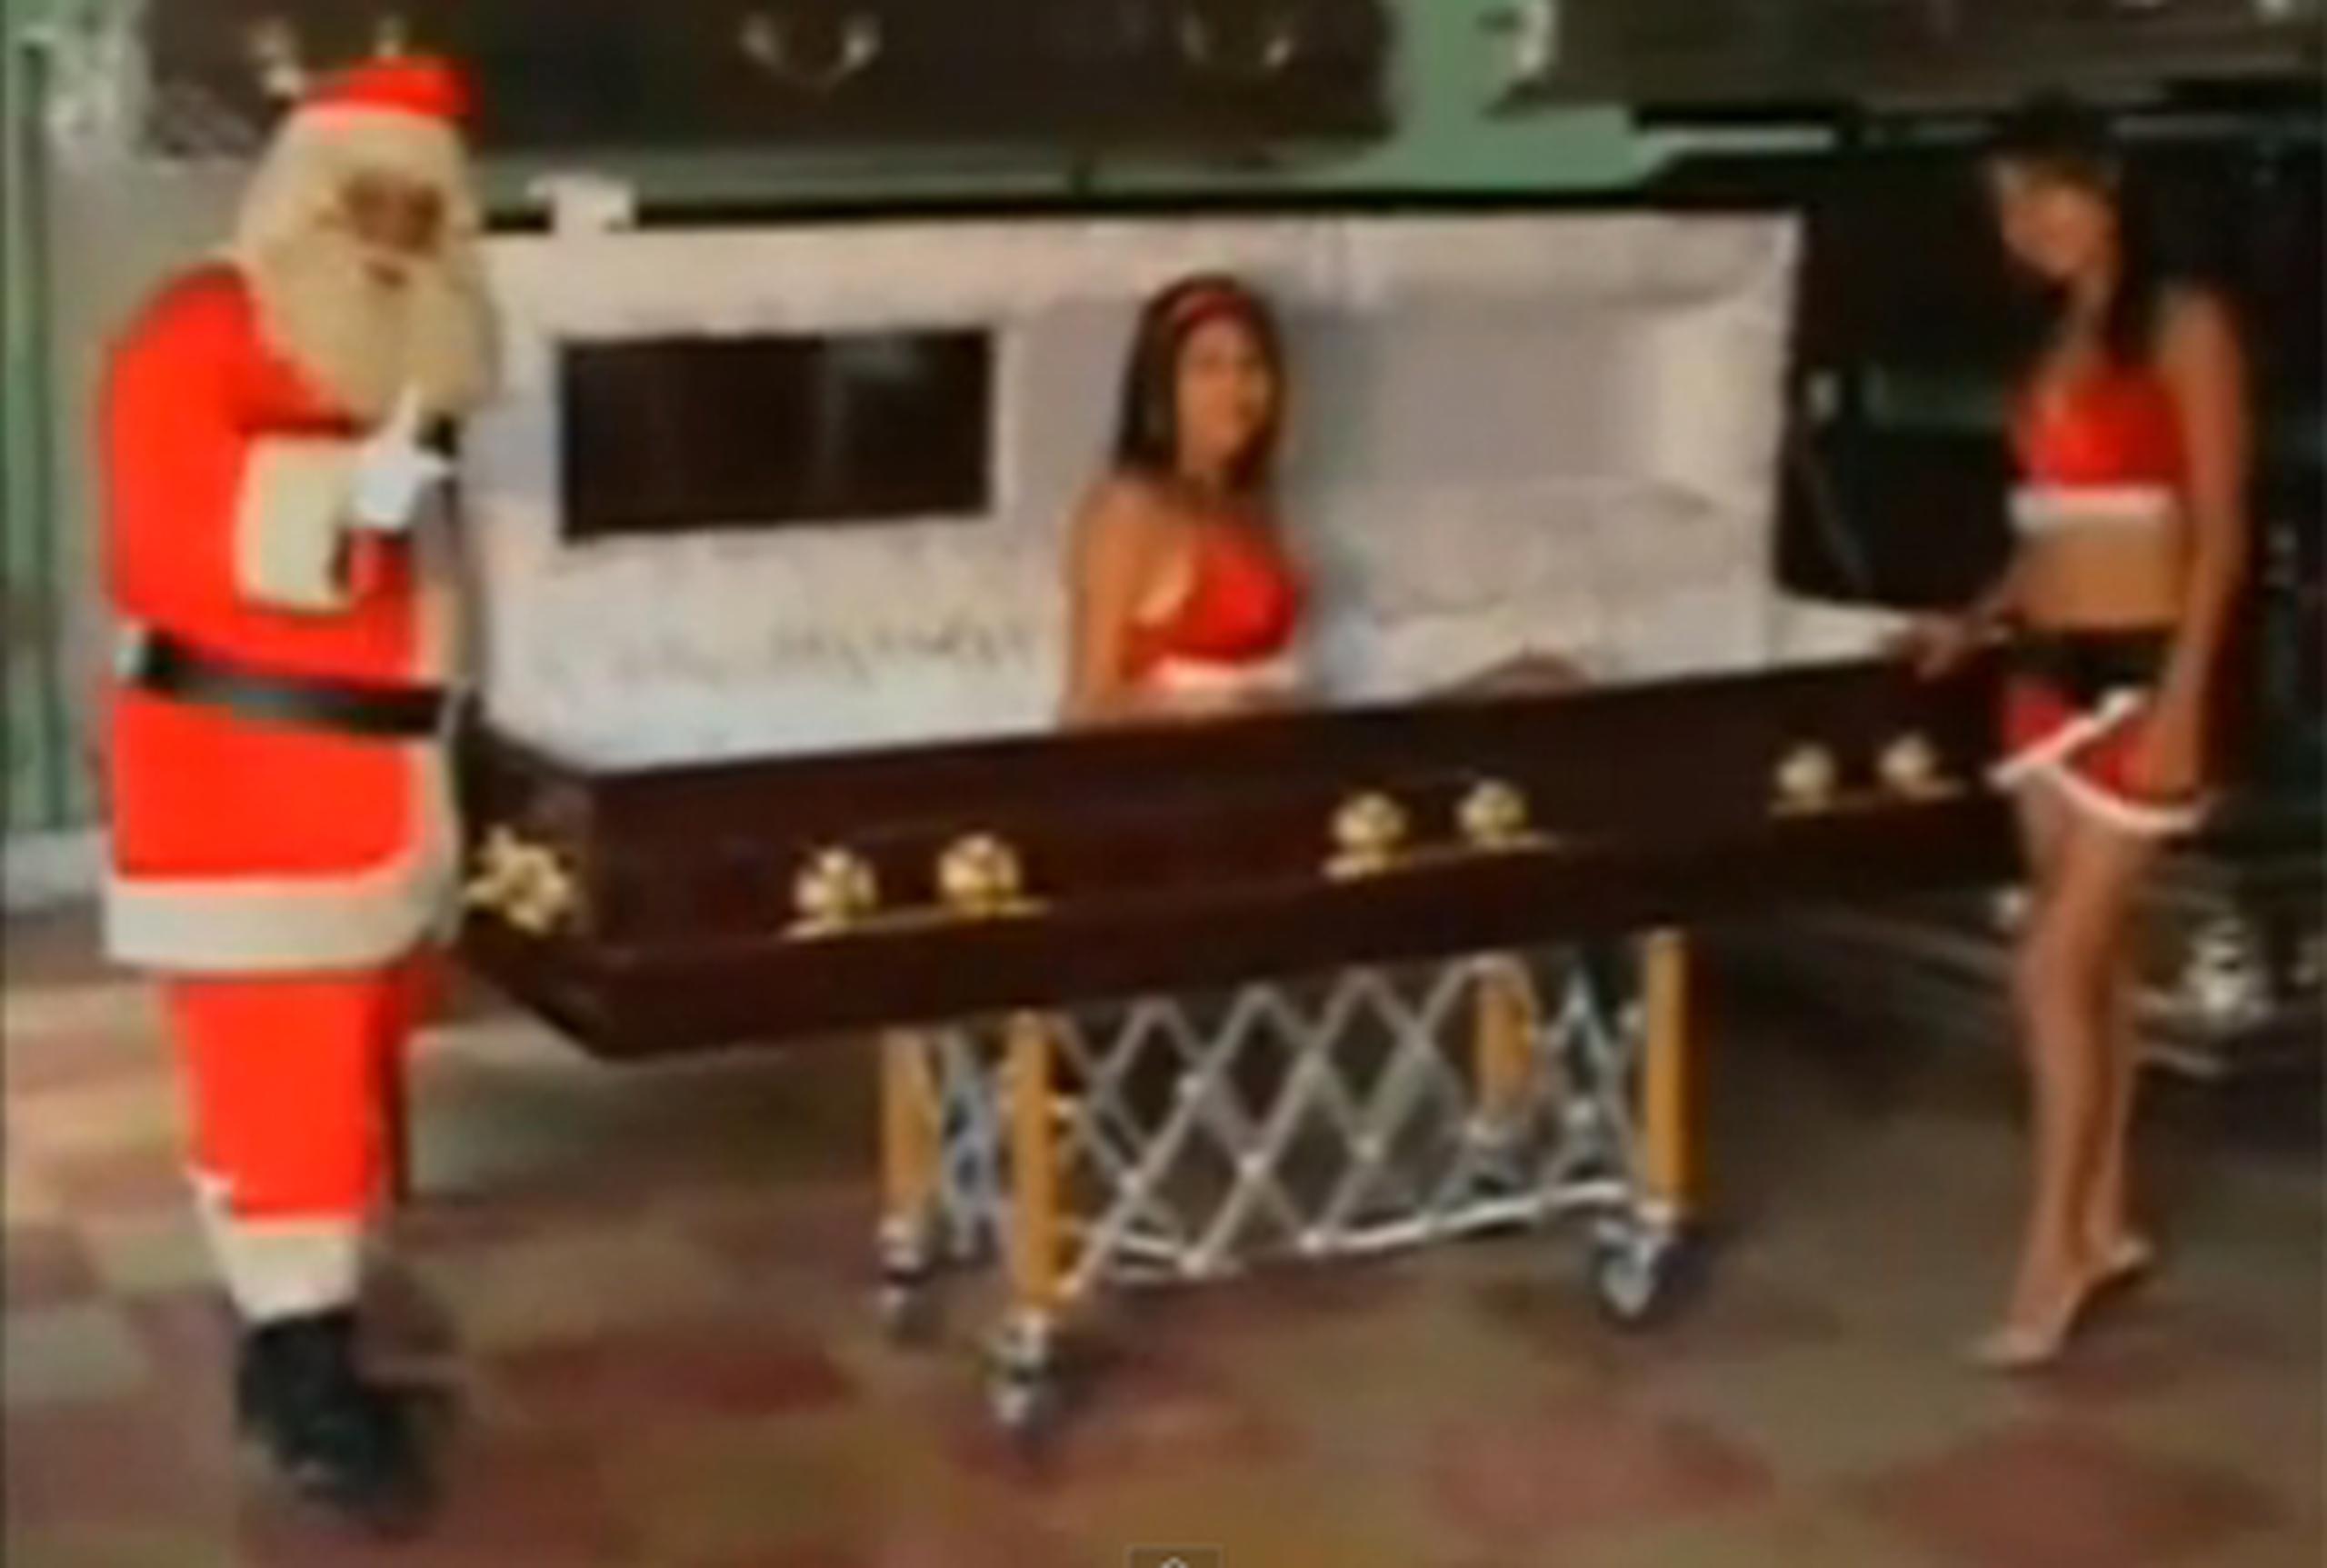 La Funeraría López, en El Progreso, Guatemala, utilizó a Santa Claus y dos modelos con muy poca ropa para promocionar sus servicios en la época navideña. (Youtube)